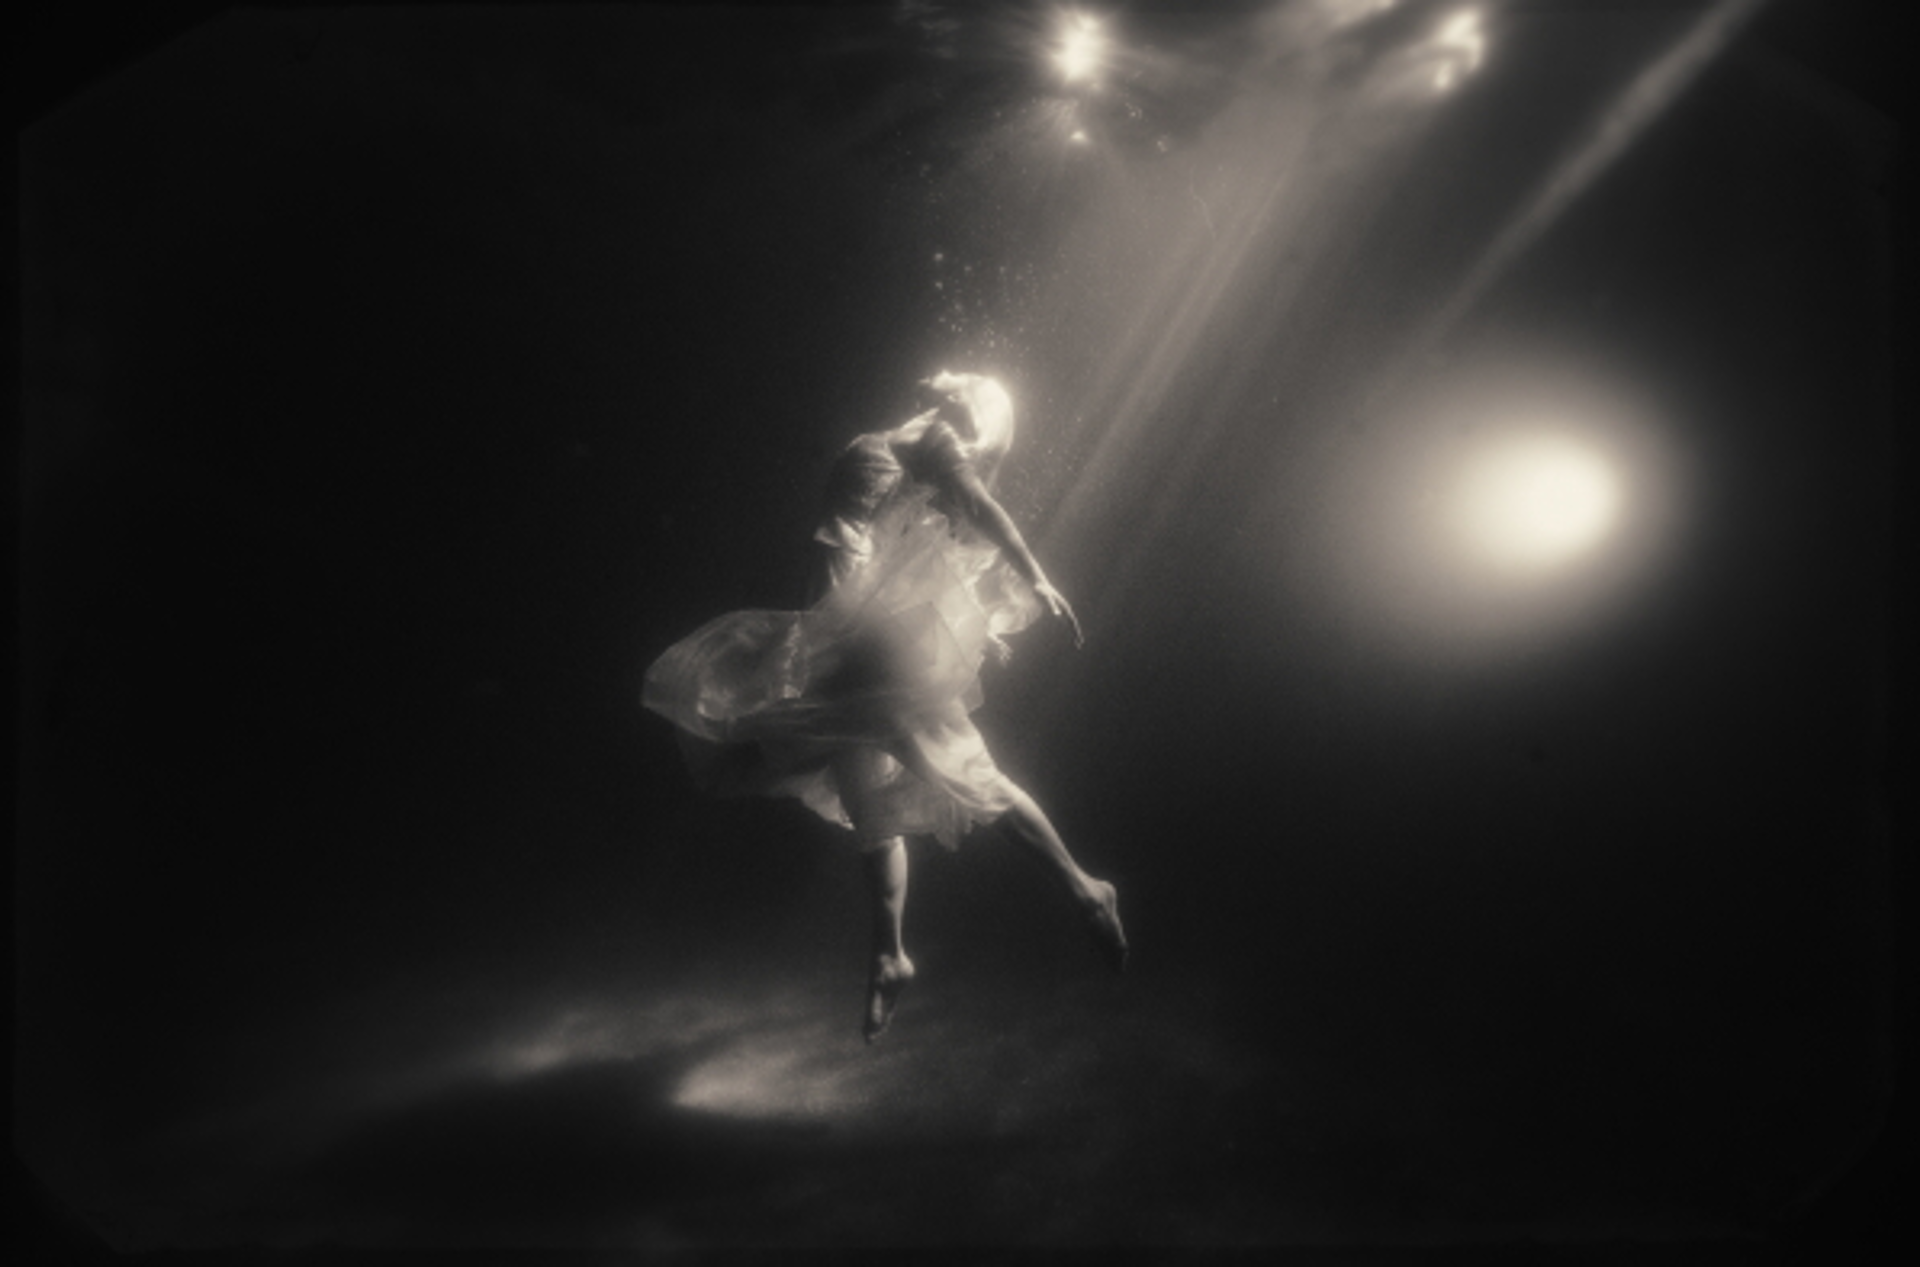 Dancer in the Dark by Tyler Shields